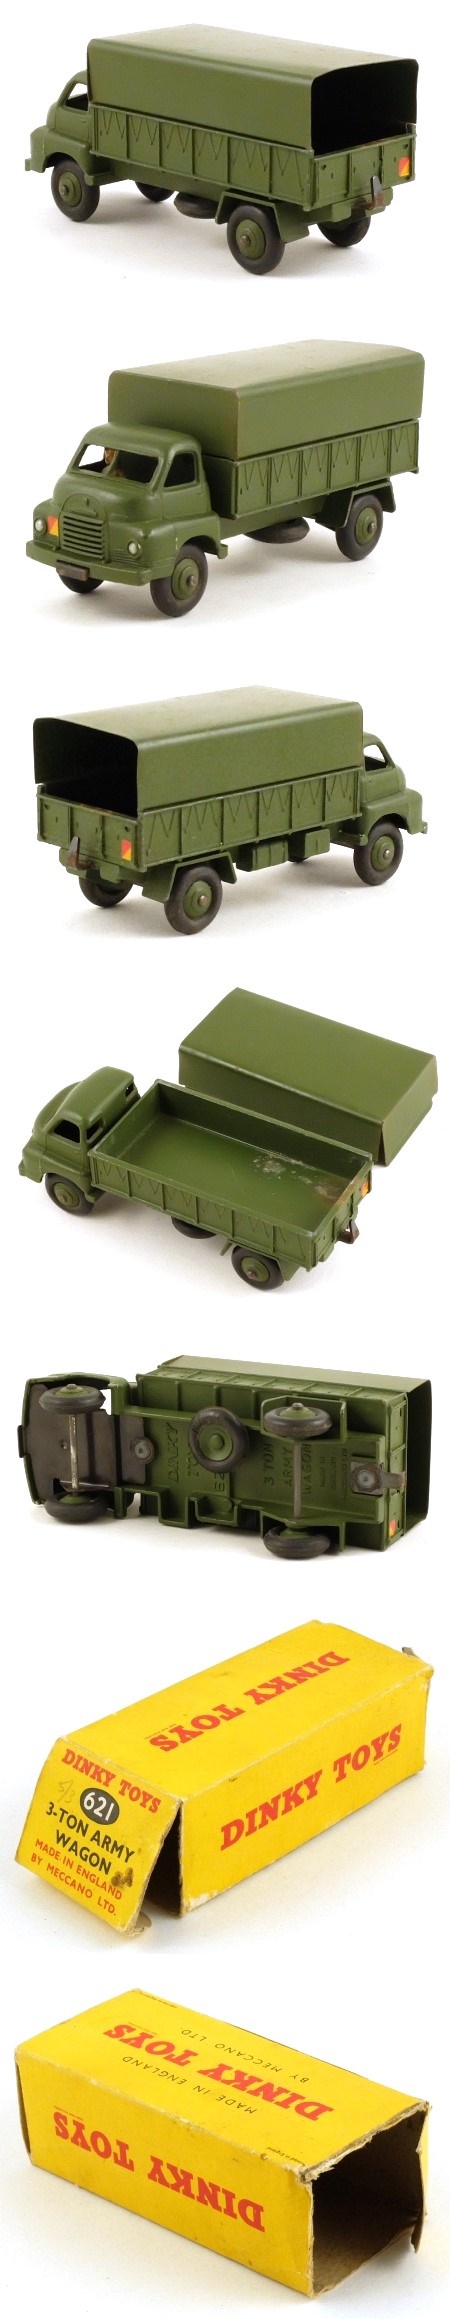 621 Bedford 3 Ton Army Wagon